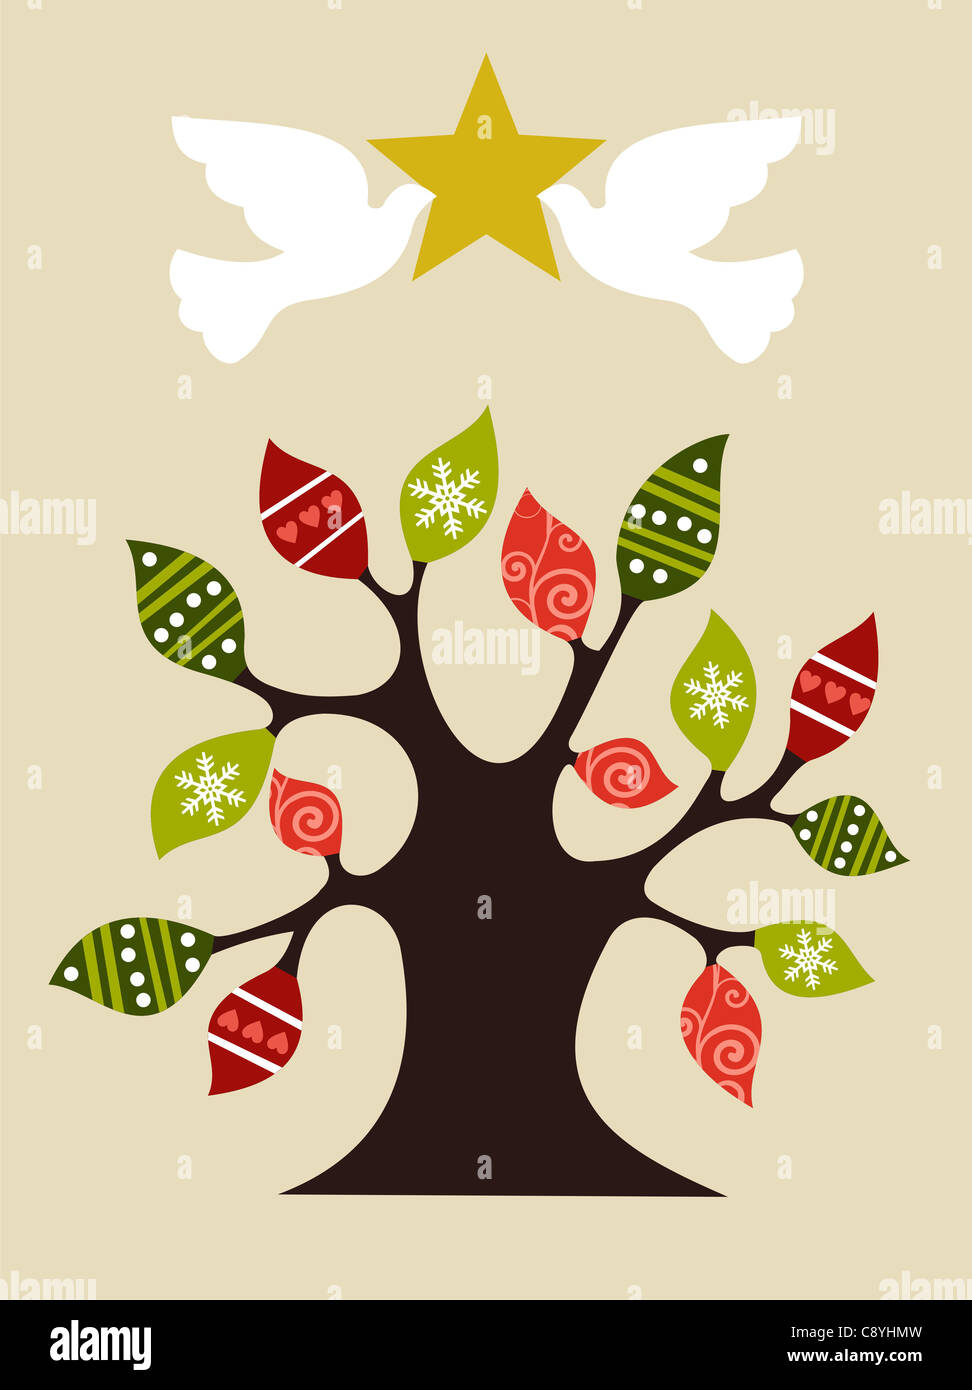 Arbre de Noël avec l'APCE colombes holding et brillante étoile d'or sur le dessus. Fichier vecteur disponible. Banque D'Images